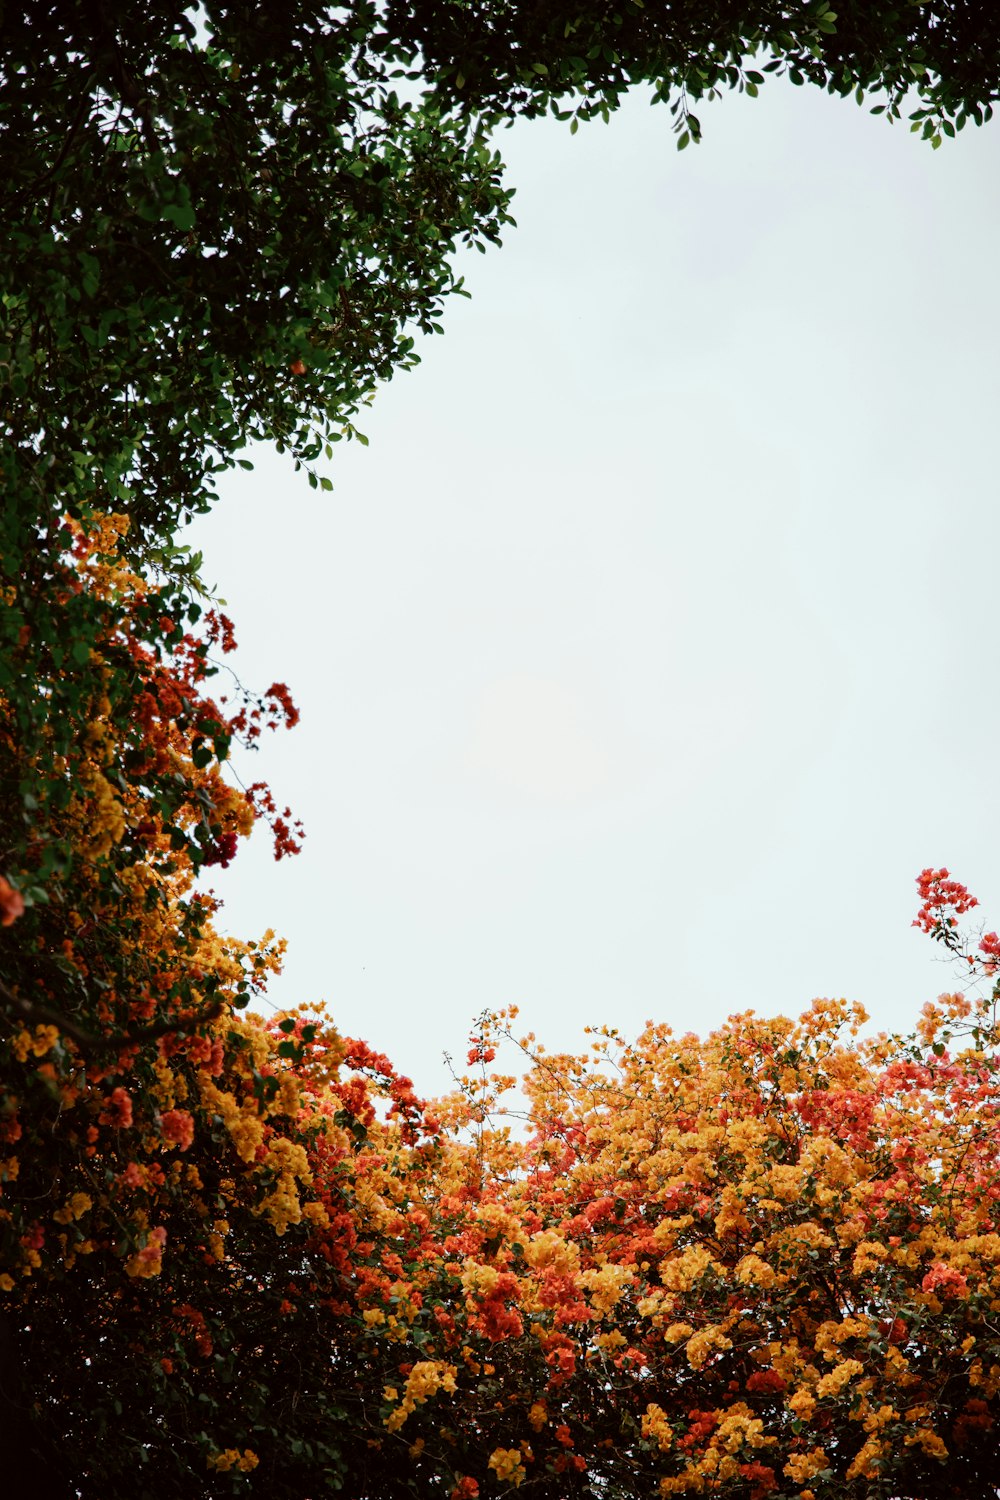 Un'immagine di un albero con fiori gialli e rossi